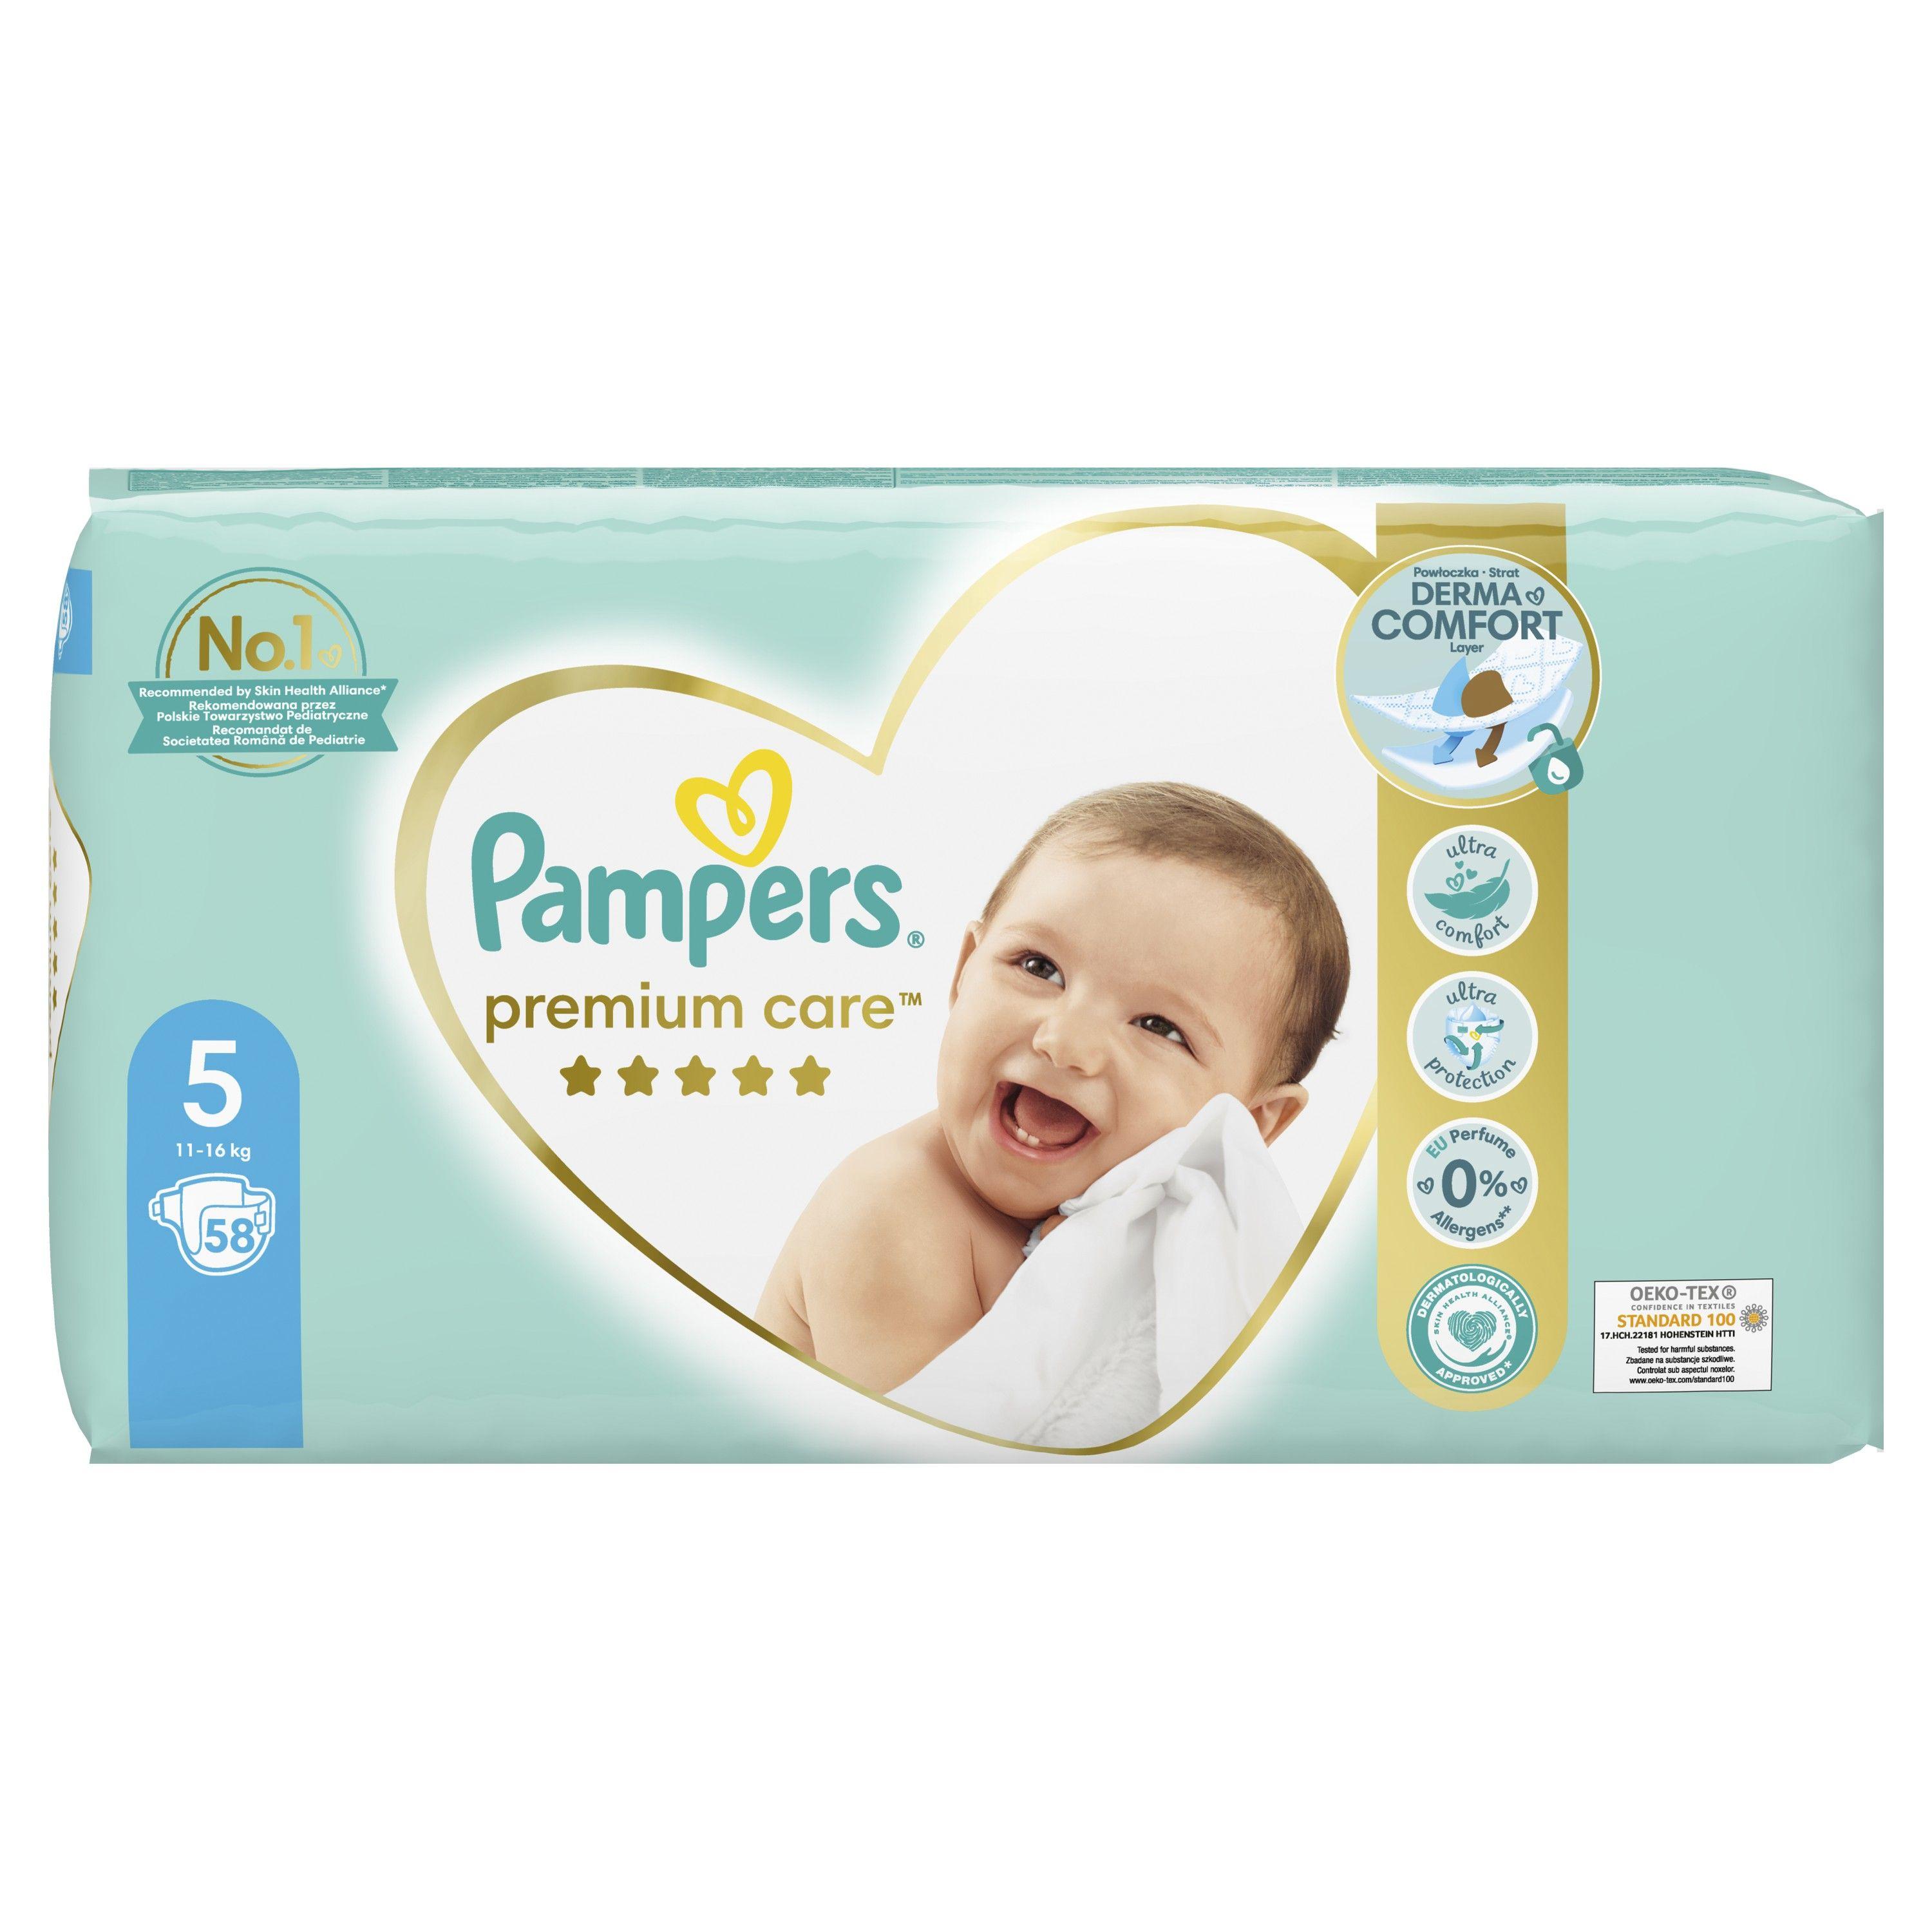 Diapers Pampers Premium Care Junior 5 58 pc(s)